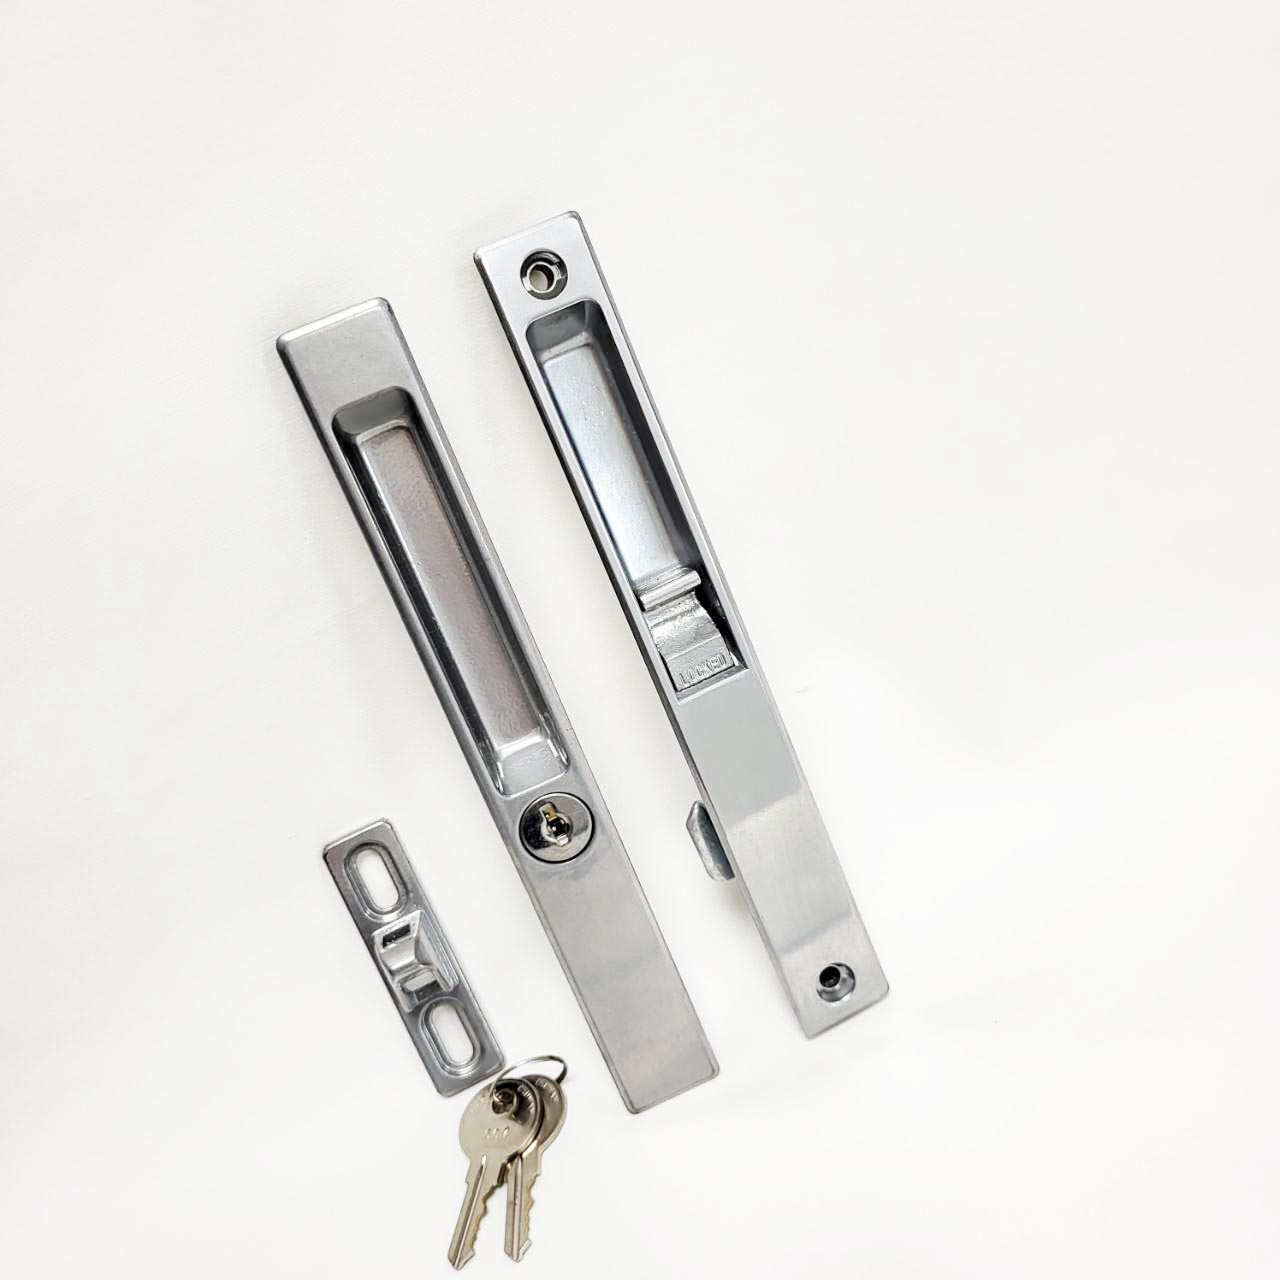 Flush Mount Key Handle set manufacturer for sliding glass door